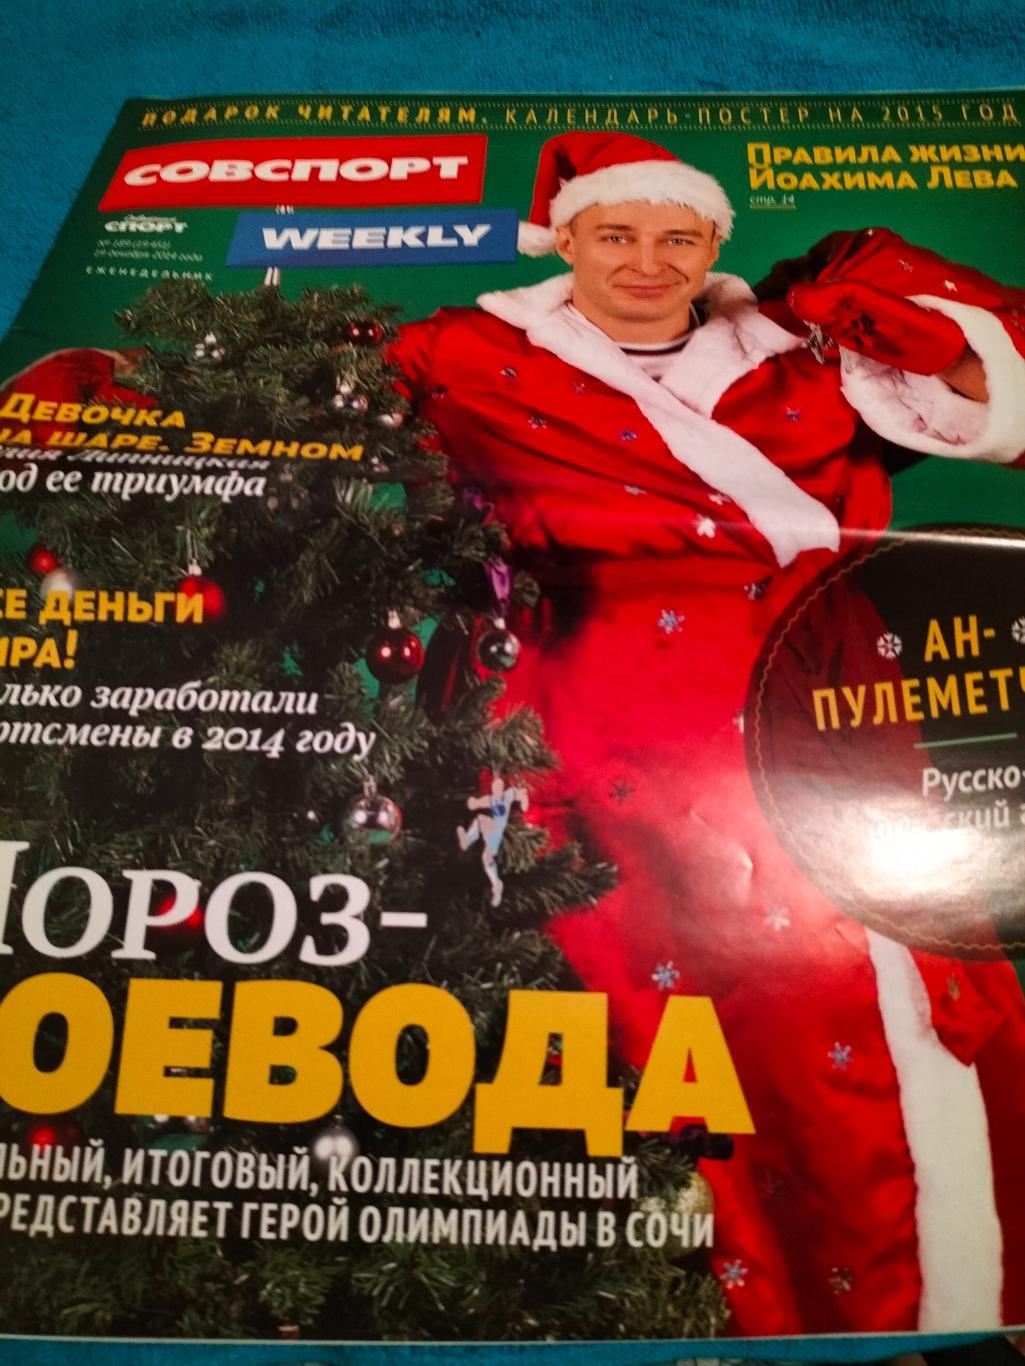 Советский Спорт Weekly за 19 декабря 2014.